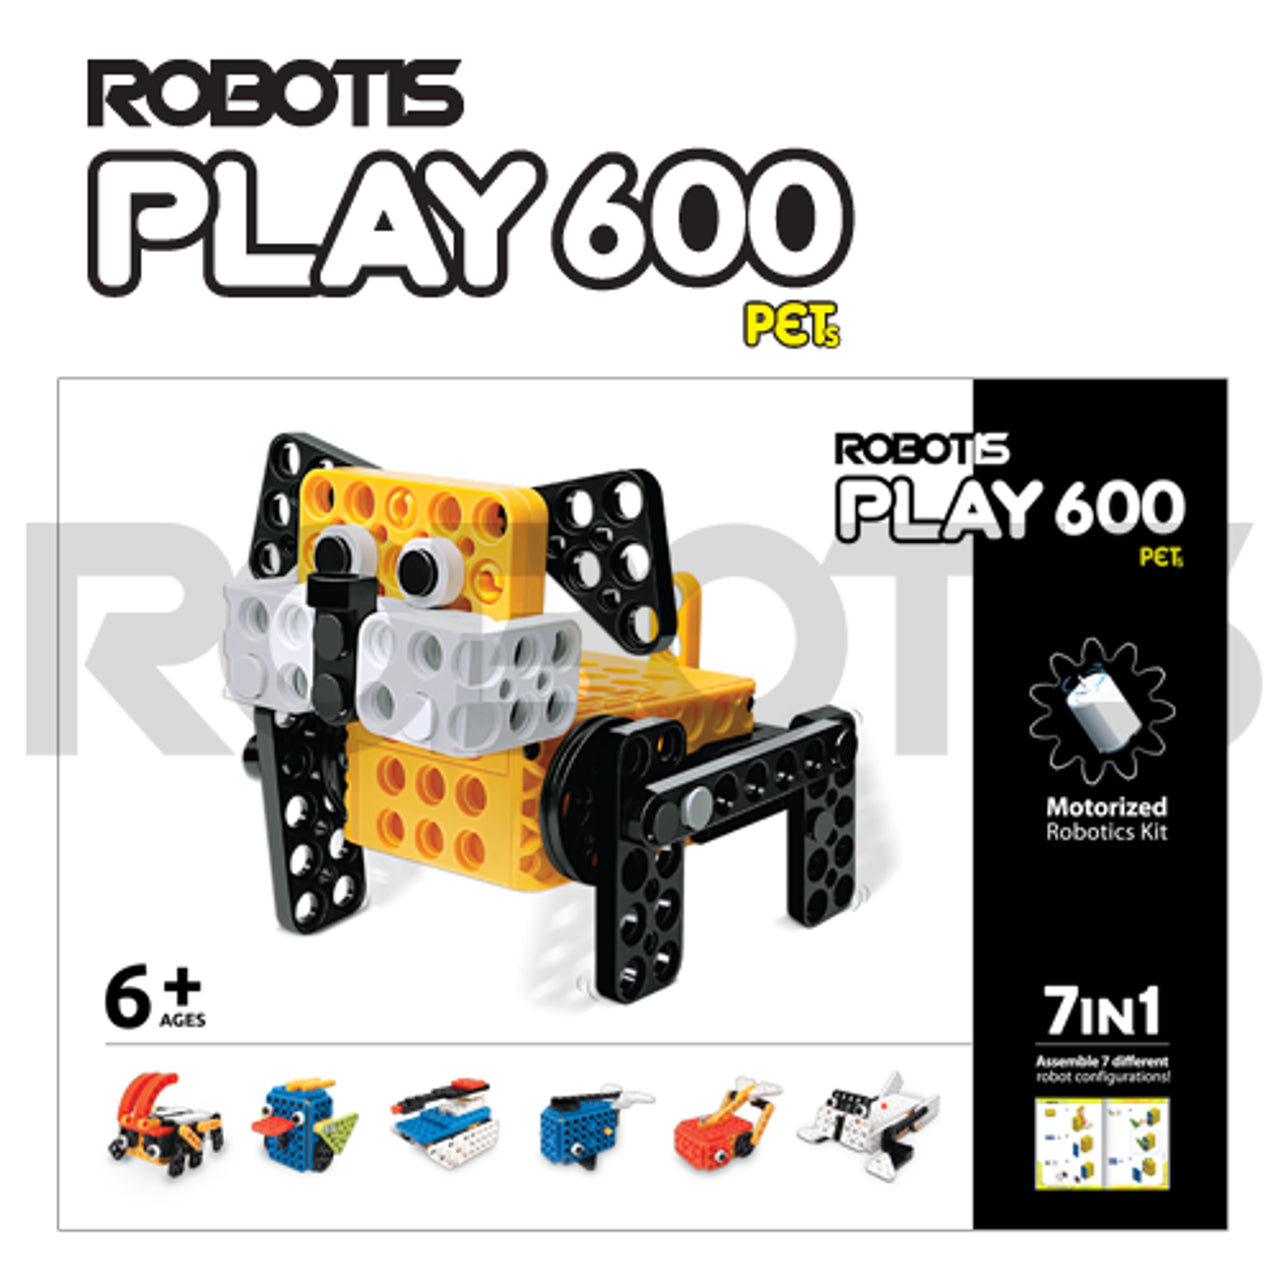 ROBOTIS PLAY 600 PETs [INT]